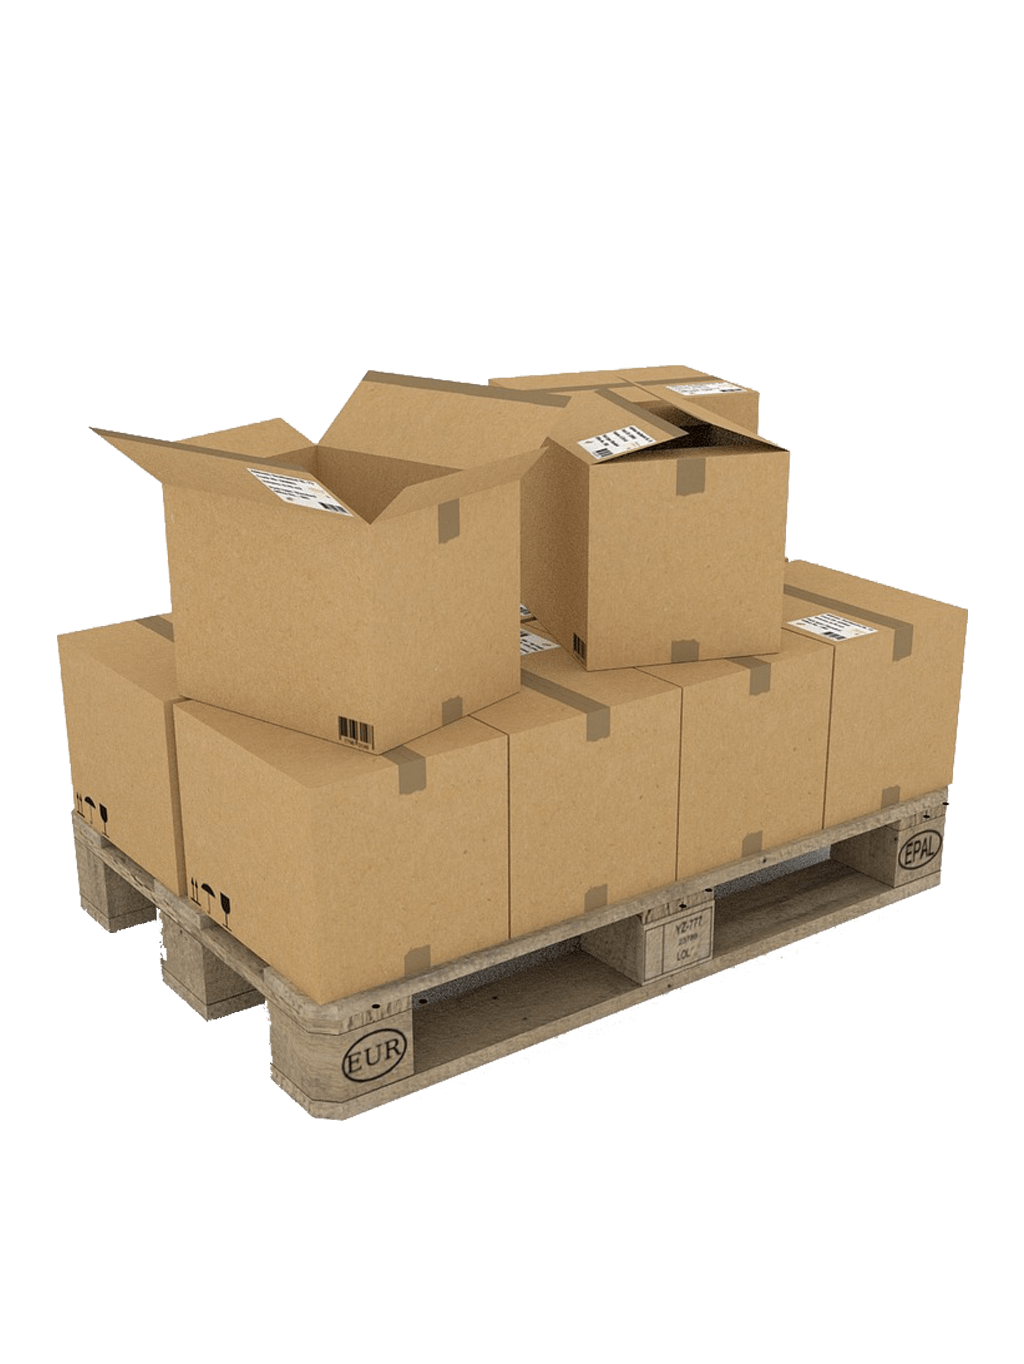 Foto: Services Logistik Palette mit Kartons